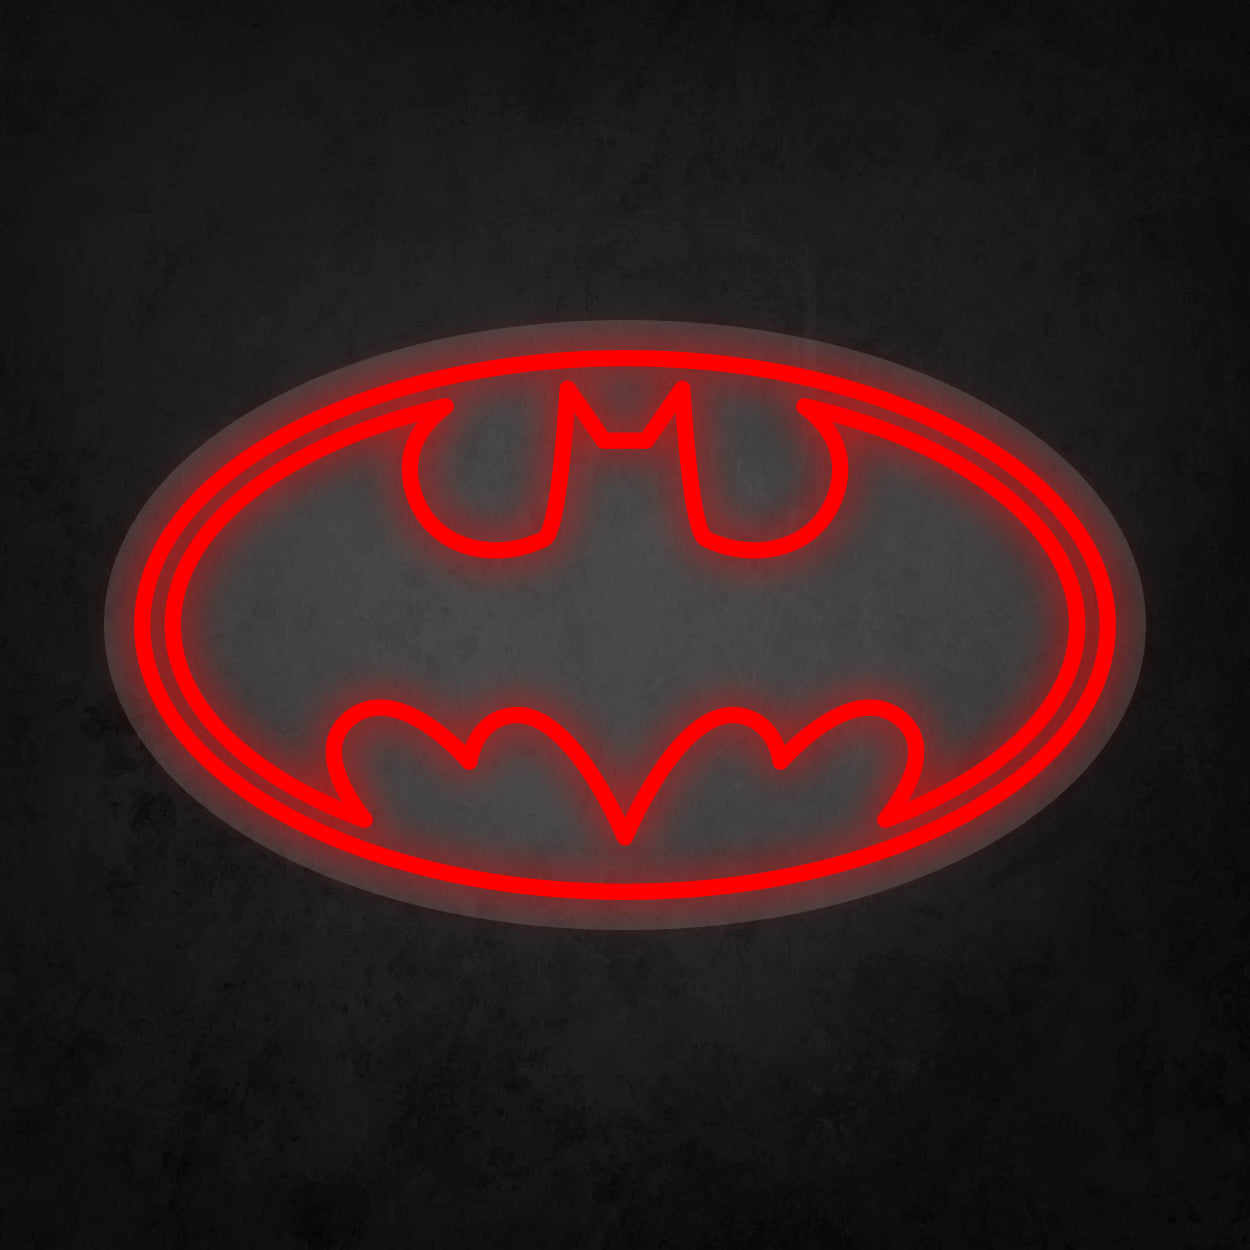 Batman Amblem Neon Tabela